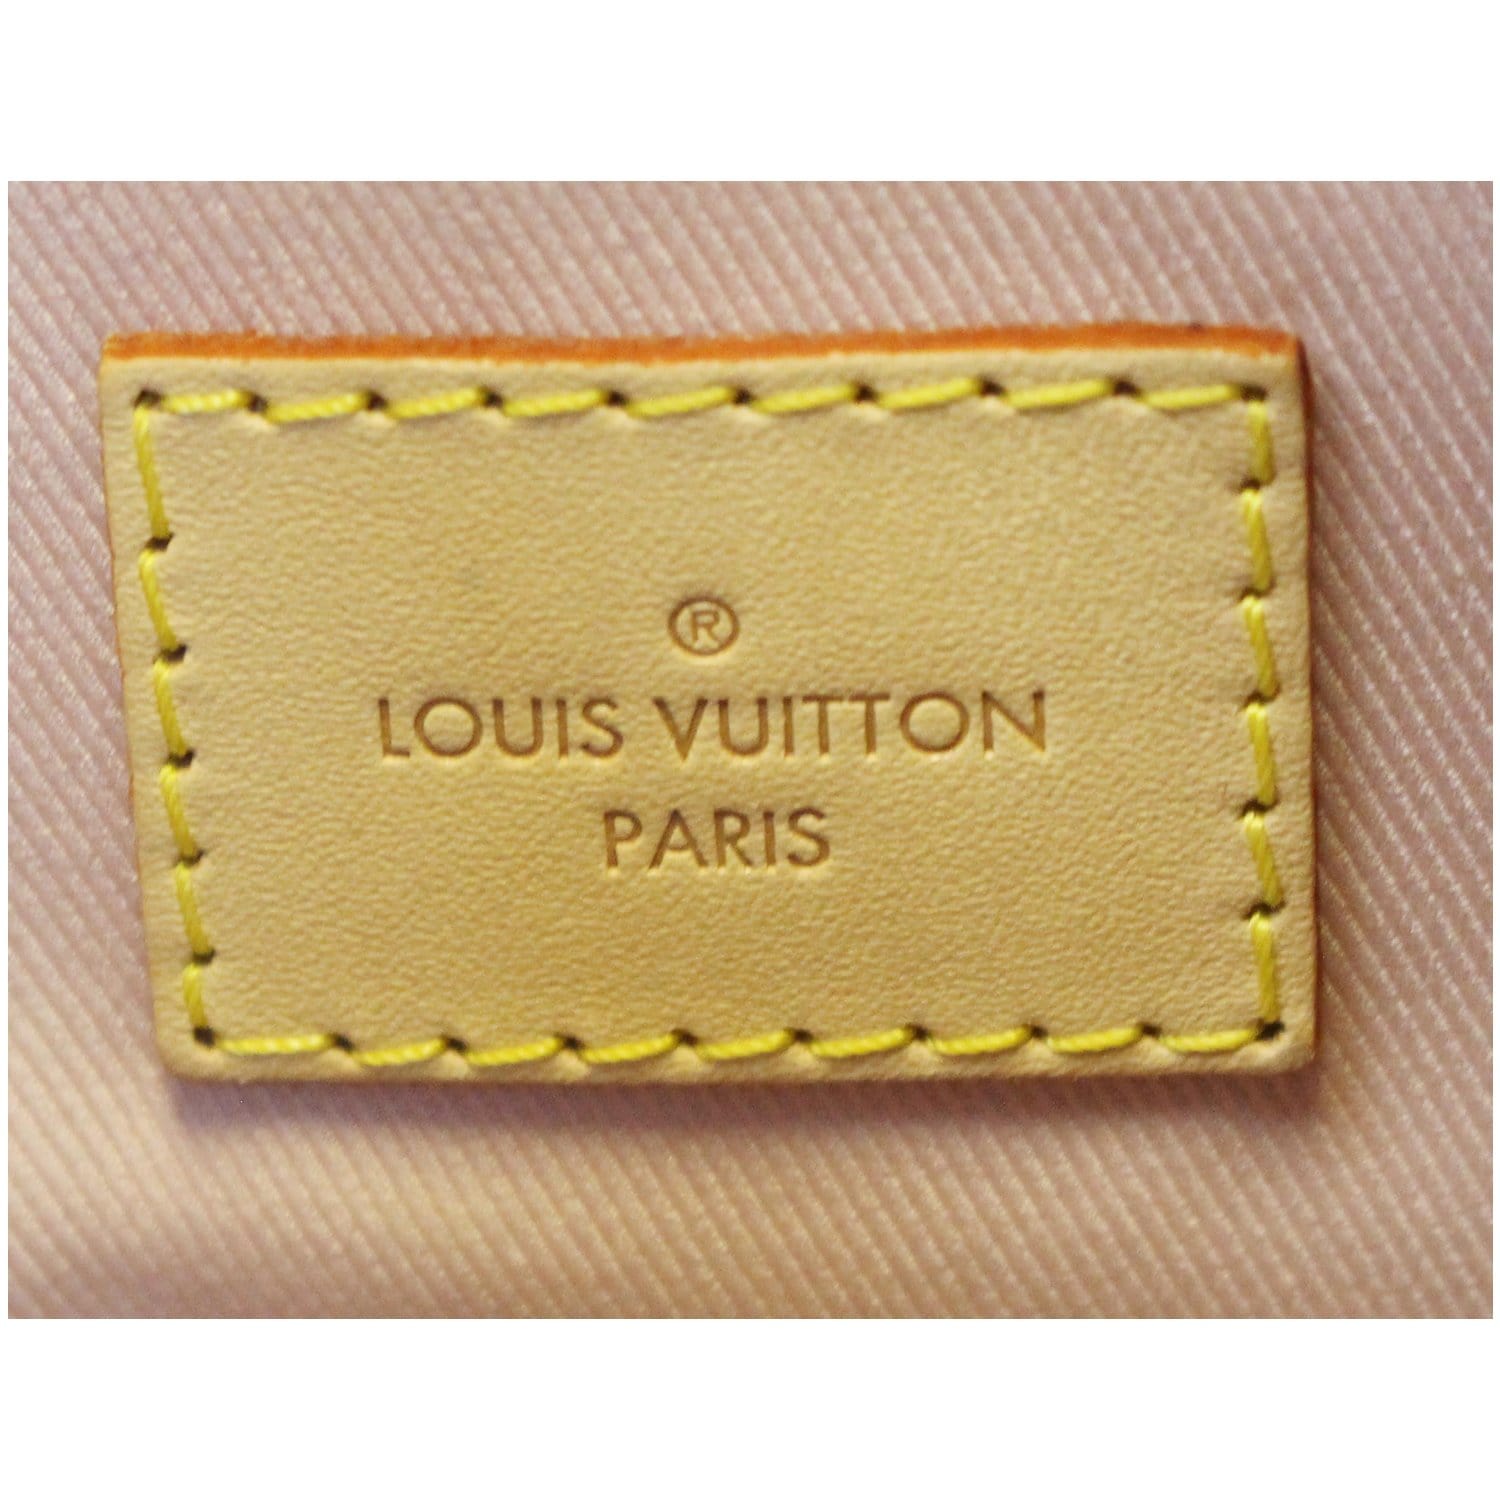 Louis Vuitton Damier Azur Graceful mm by Ann's Fabulous Finds